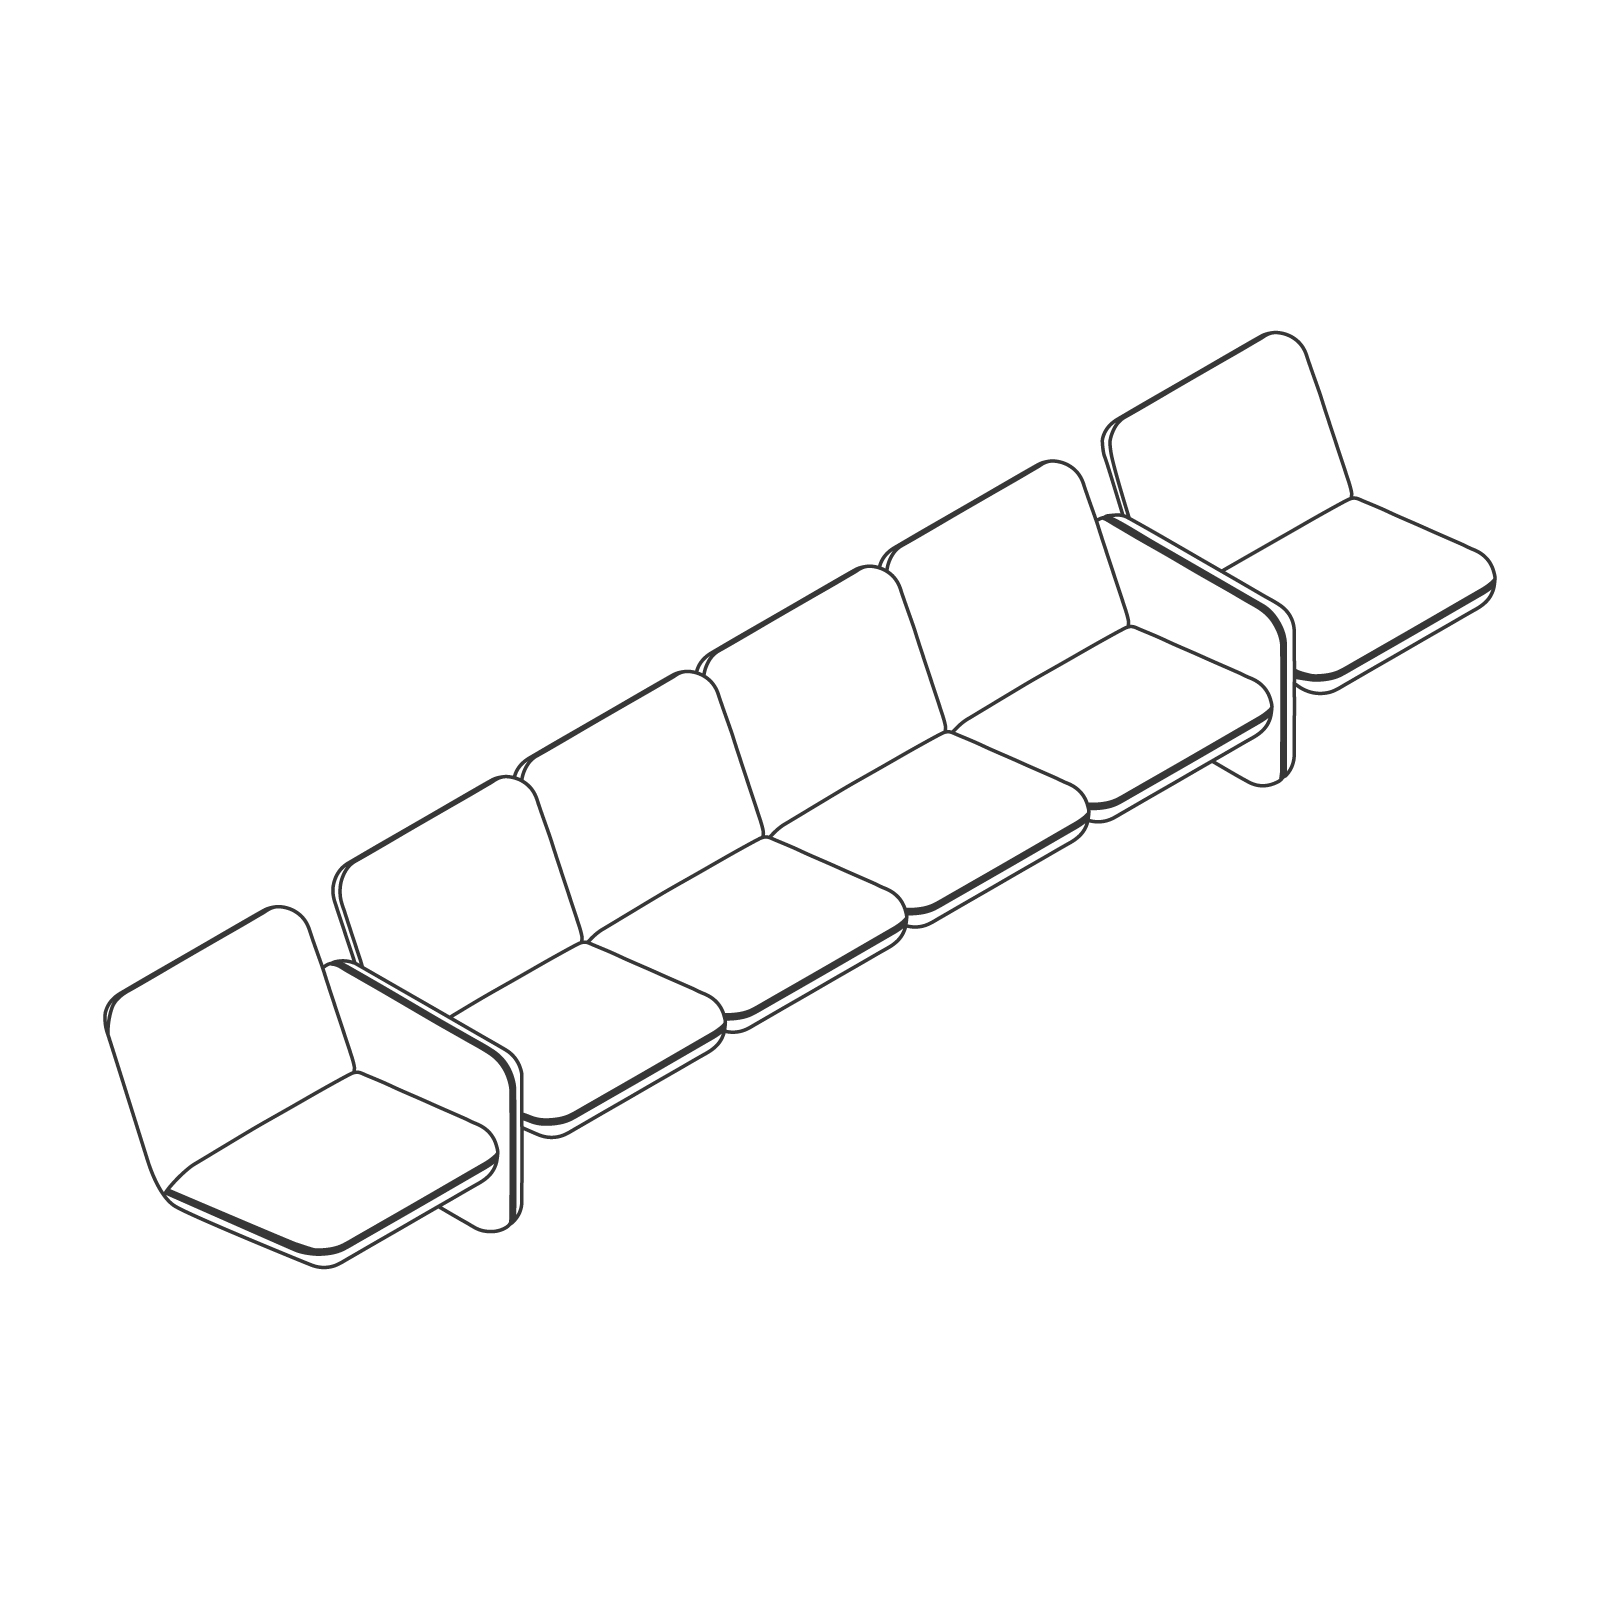 Dibujo en líneas - Conjunto de sofás modulares Wilkes – 6 asientos